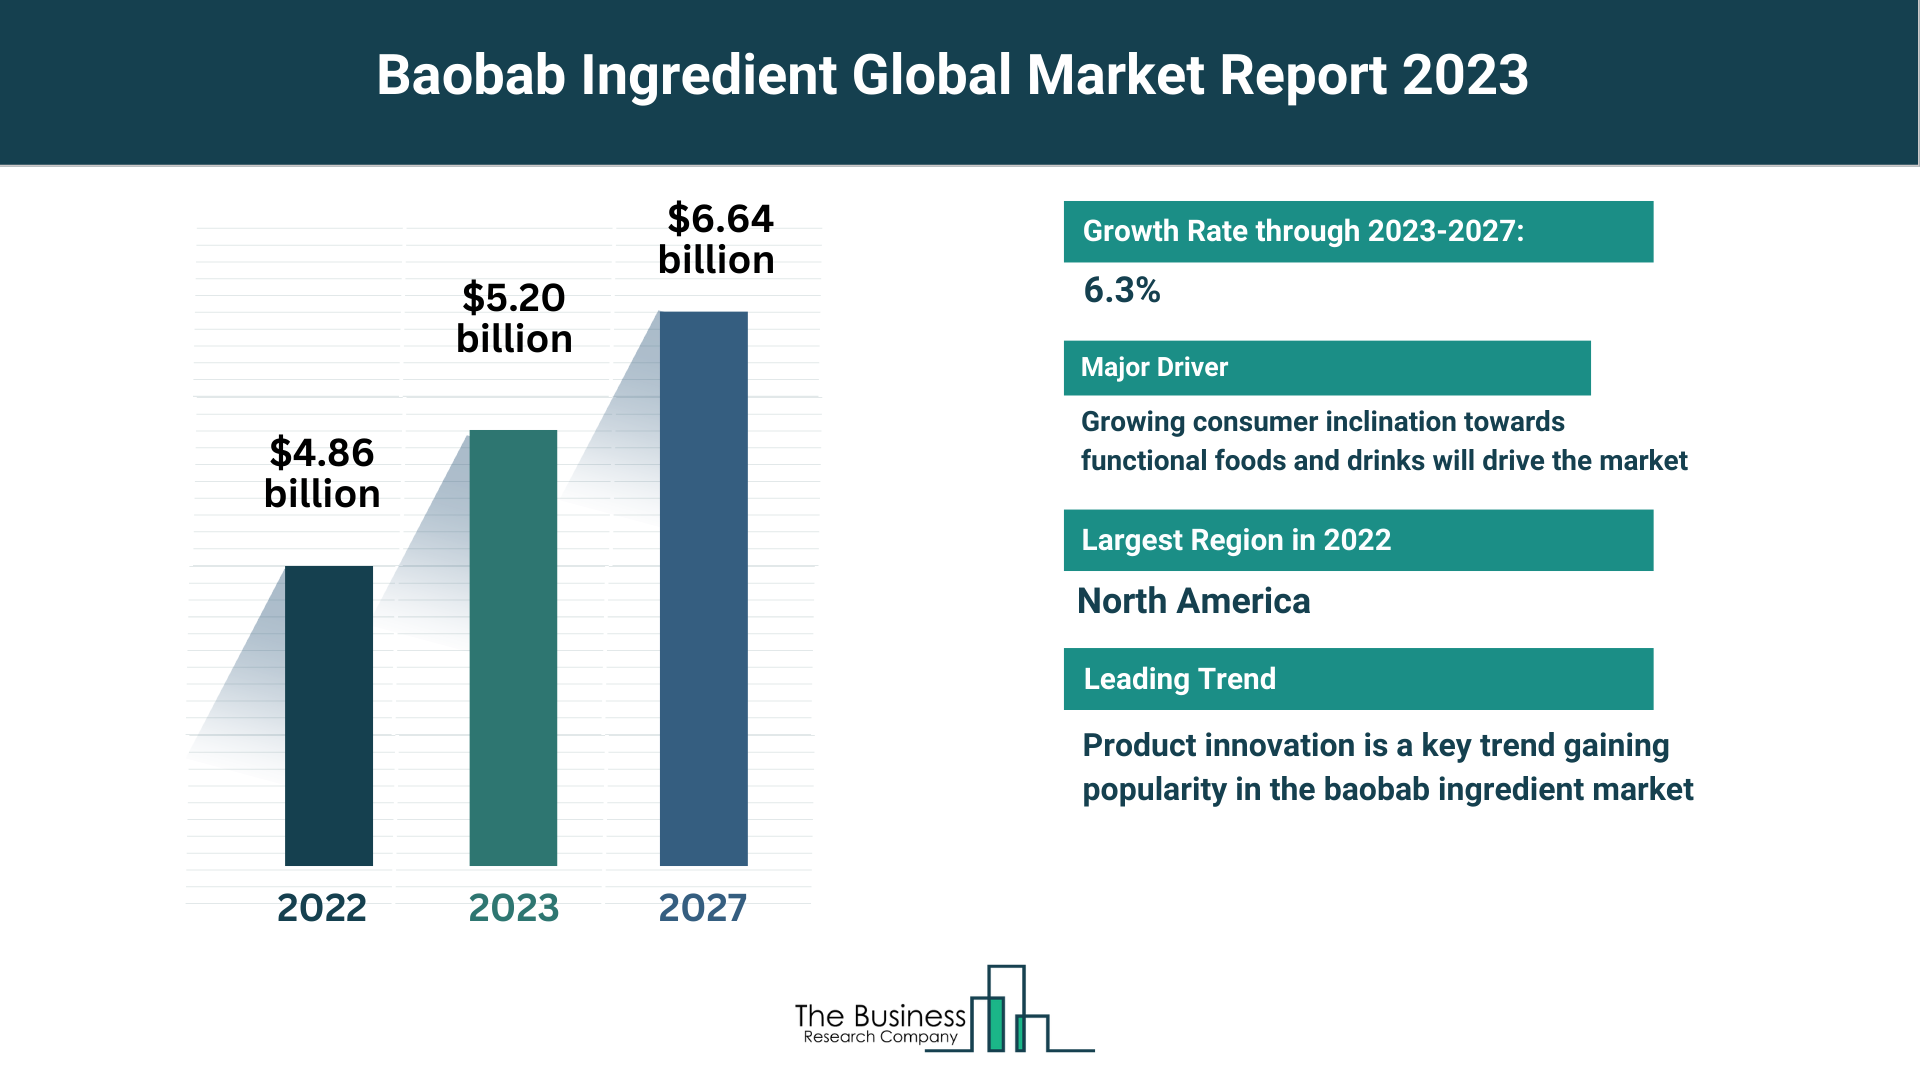 Global Baobab Ingredient Market